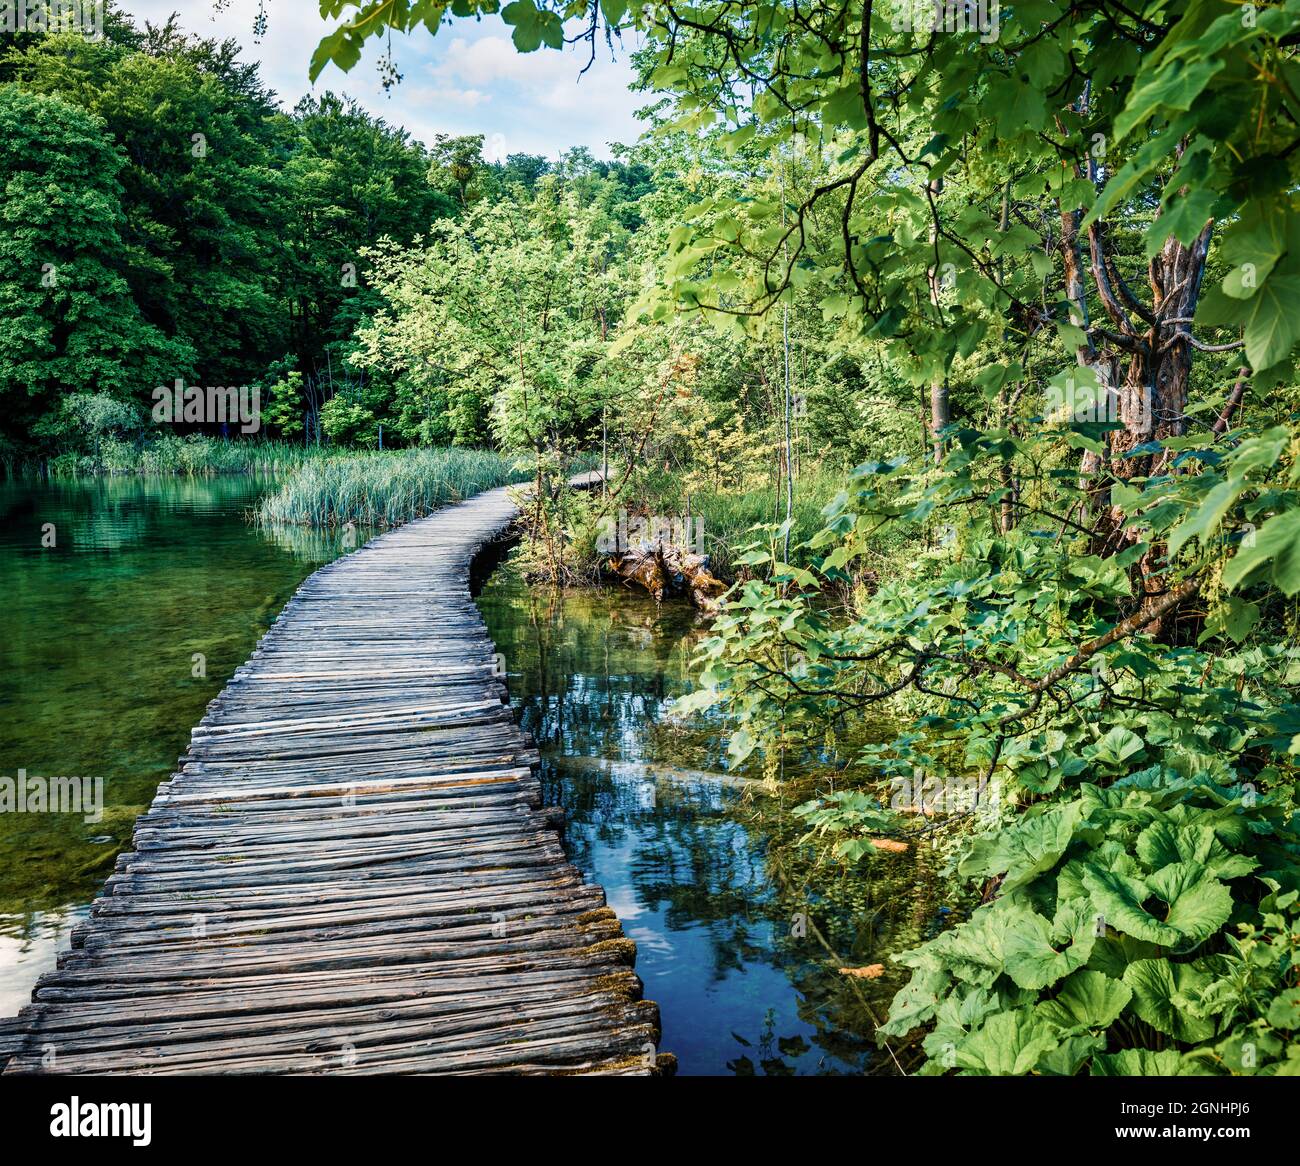 Farbenfrohe Morgenansicht des Plitvice National Park. Malerische Sommerszene von grünem Wald mit reinem Wasser See. Herrliche Landschaft von Croa Stockfoto